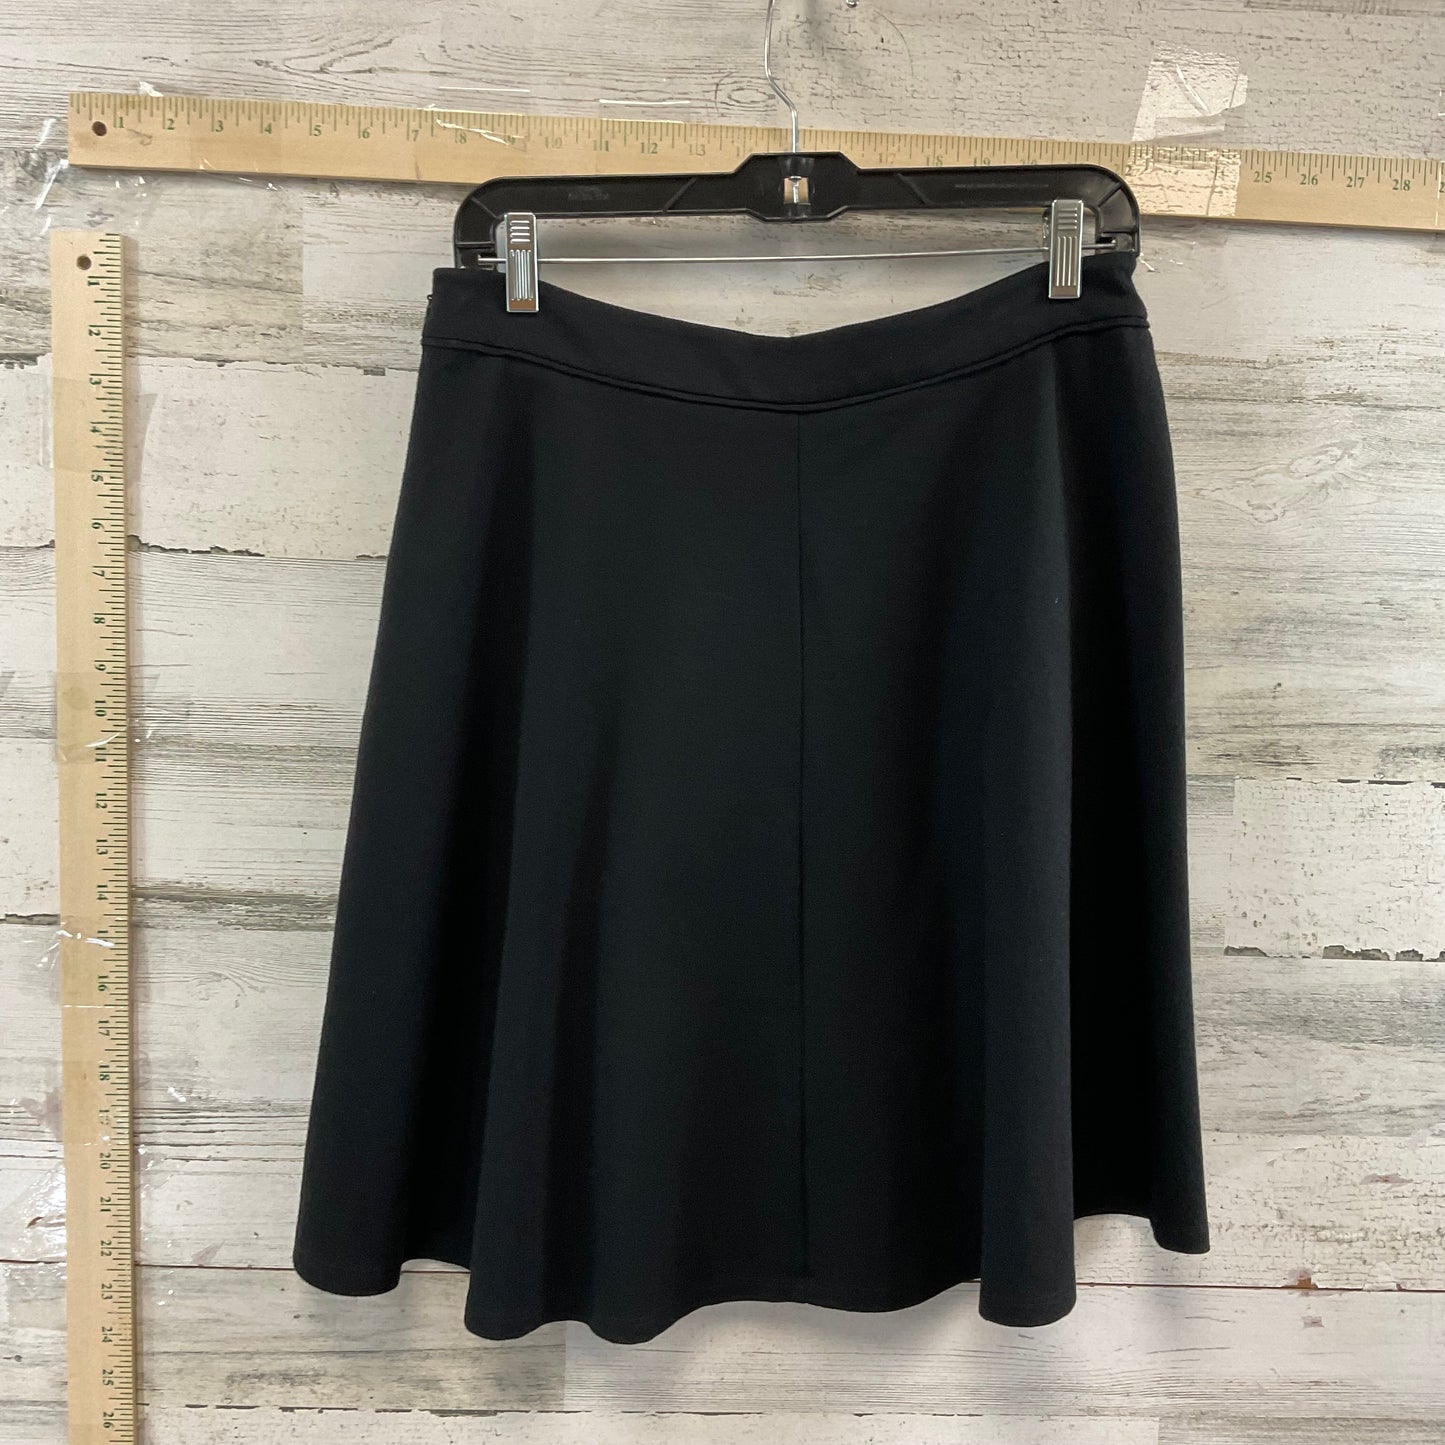 Skirt Mini & Short By Boden  Size: 8